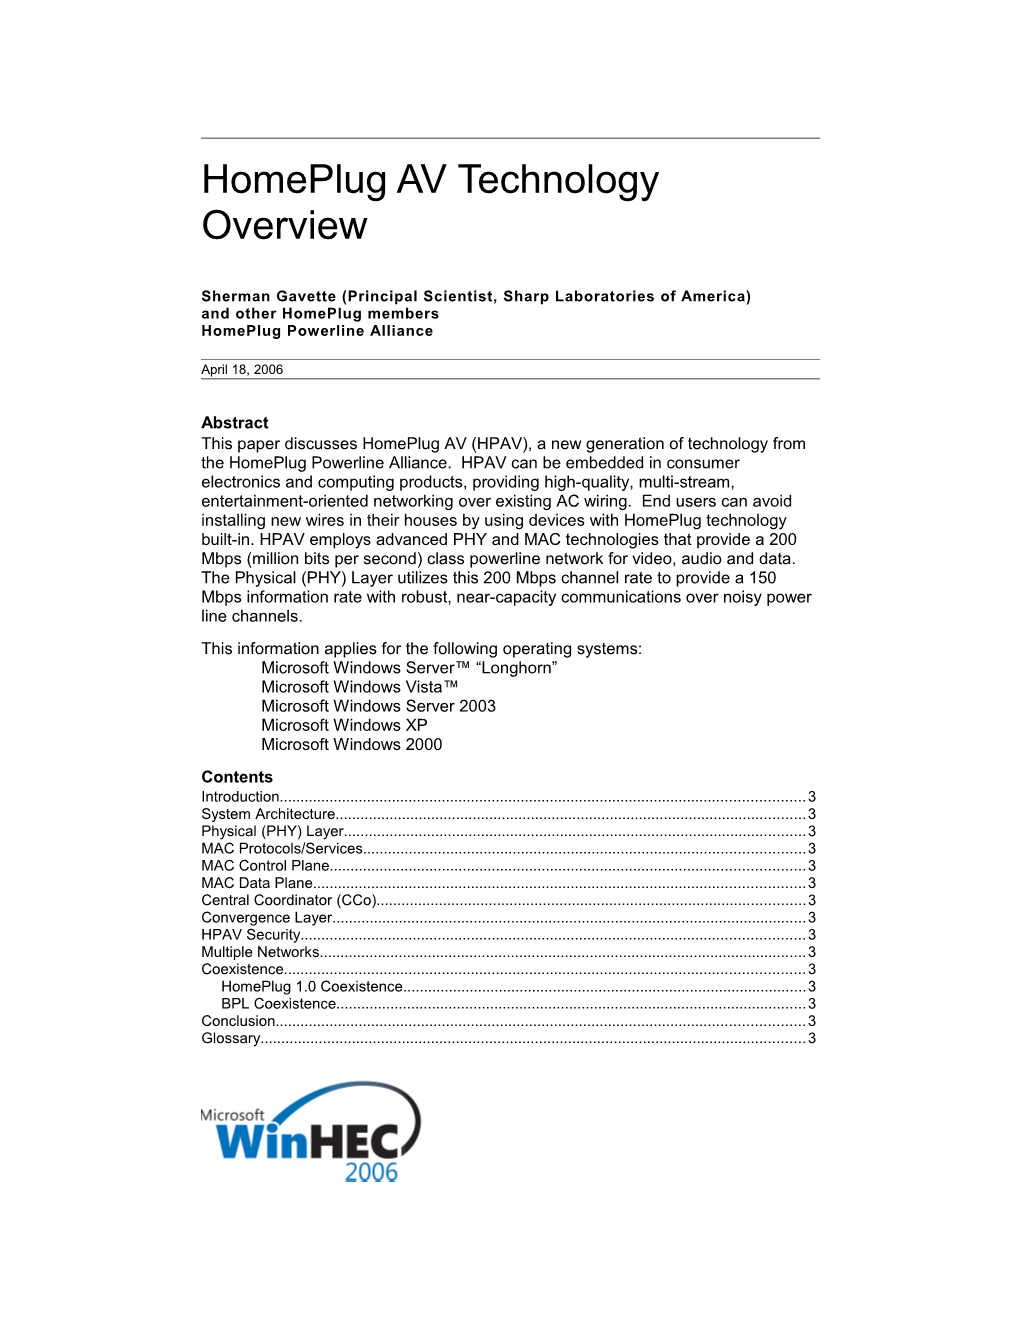 Homeplug AV Technology Overview